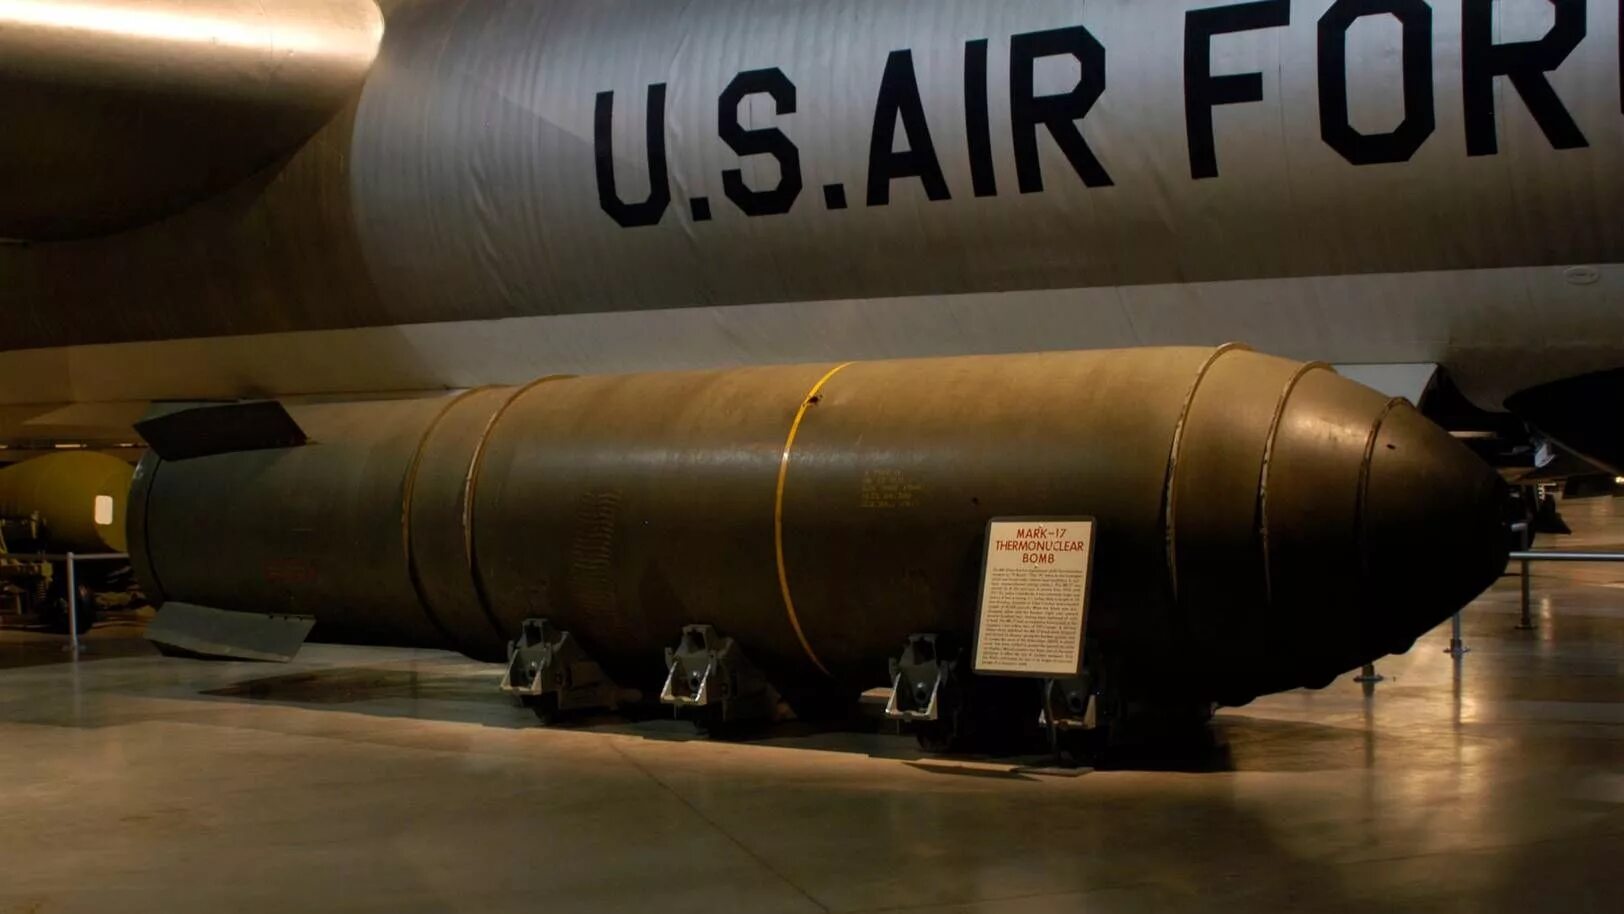 Название ядерного оружия сша. Царь бомба США. Царь-бомба ядерное оружие России. Термоядерная бомба MK-17. Ядерная боеголовка России царь бомба.